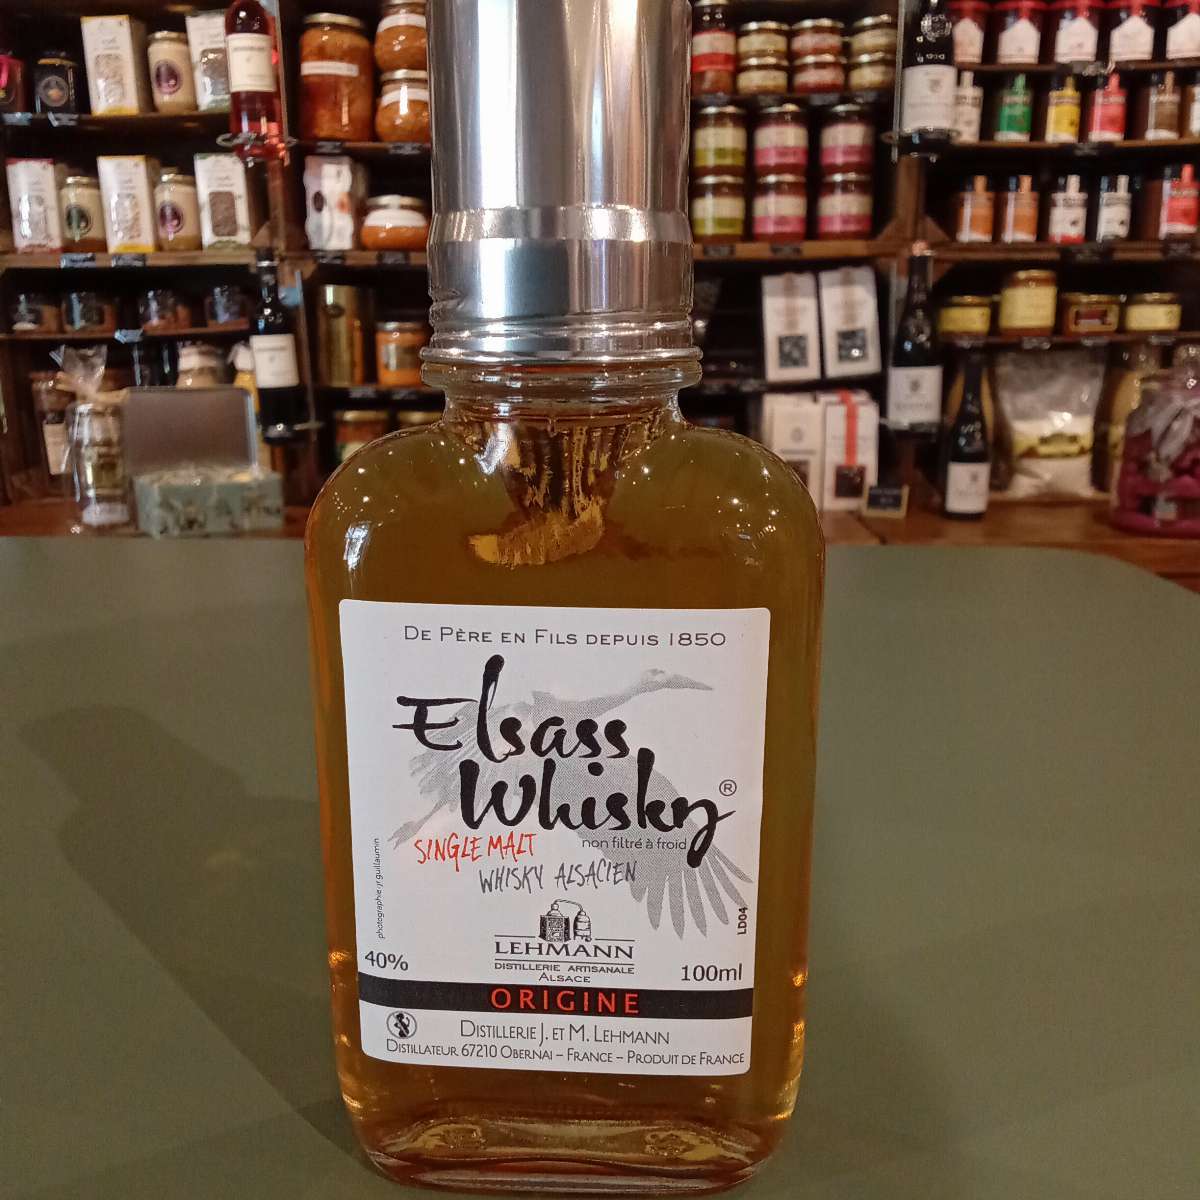 Elsass Whisky single malt